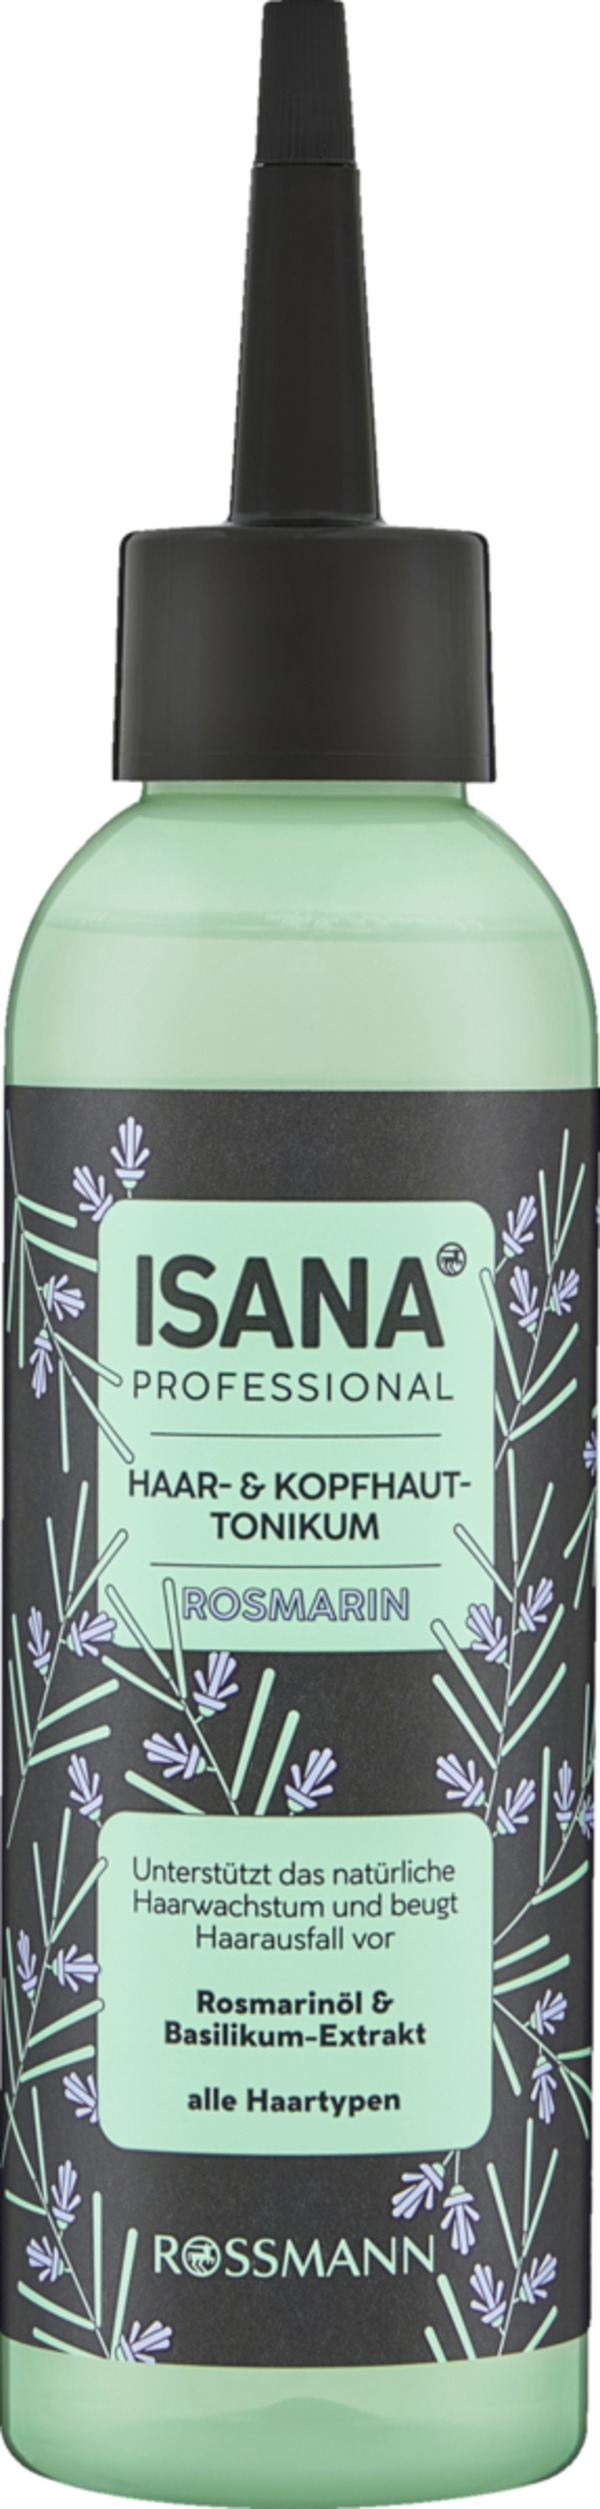 Bild 1 von ISANA PROFESSIONAL Haar & Kopfhaut Tonikum Rosmarin